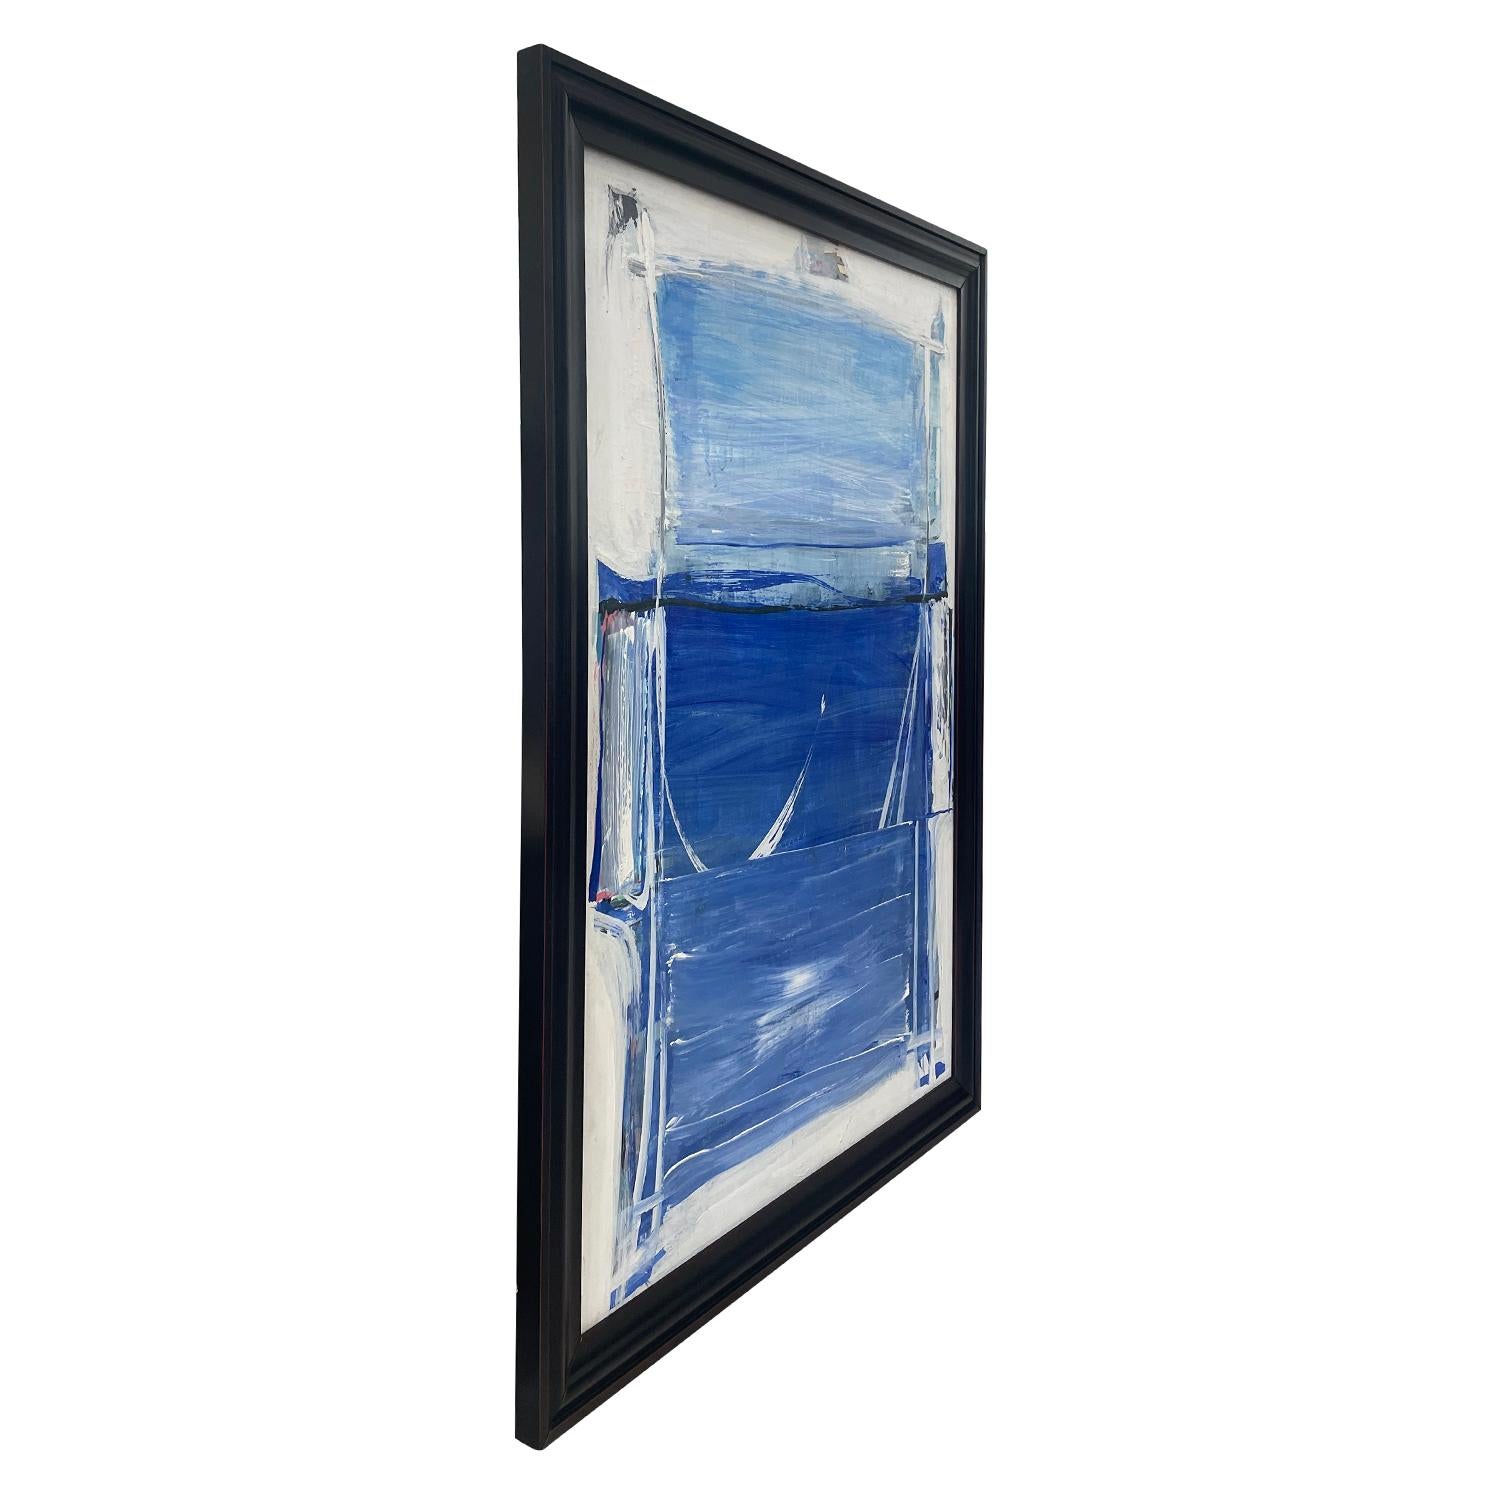 Une huile sur bois abstraite française du milieu du siècle, bleu clair et blanche, représentant une fenêtre, peinte par Daniel Clesse en bon état. Signé en bas à droite. Usure conforme à l'âge et à l'utilisation. Daté de 1989, Paris, France.

Sans